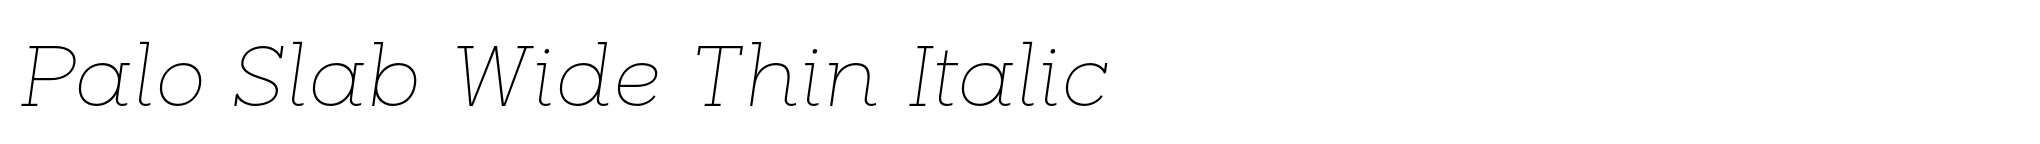 Palo Slab Wide Thin Italic image